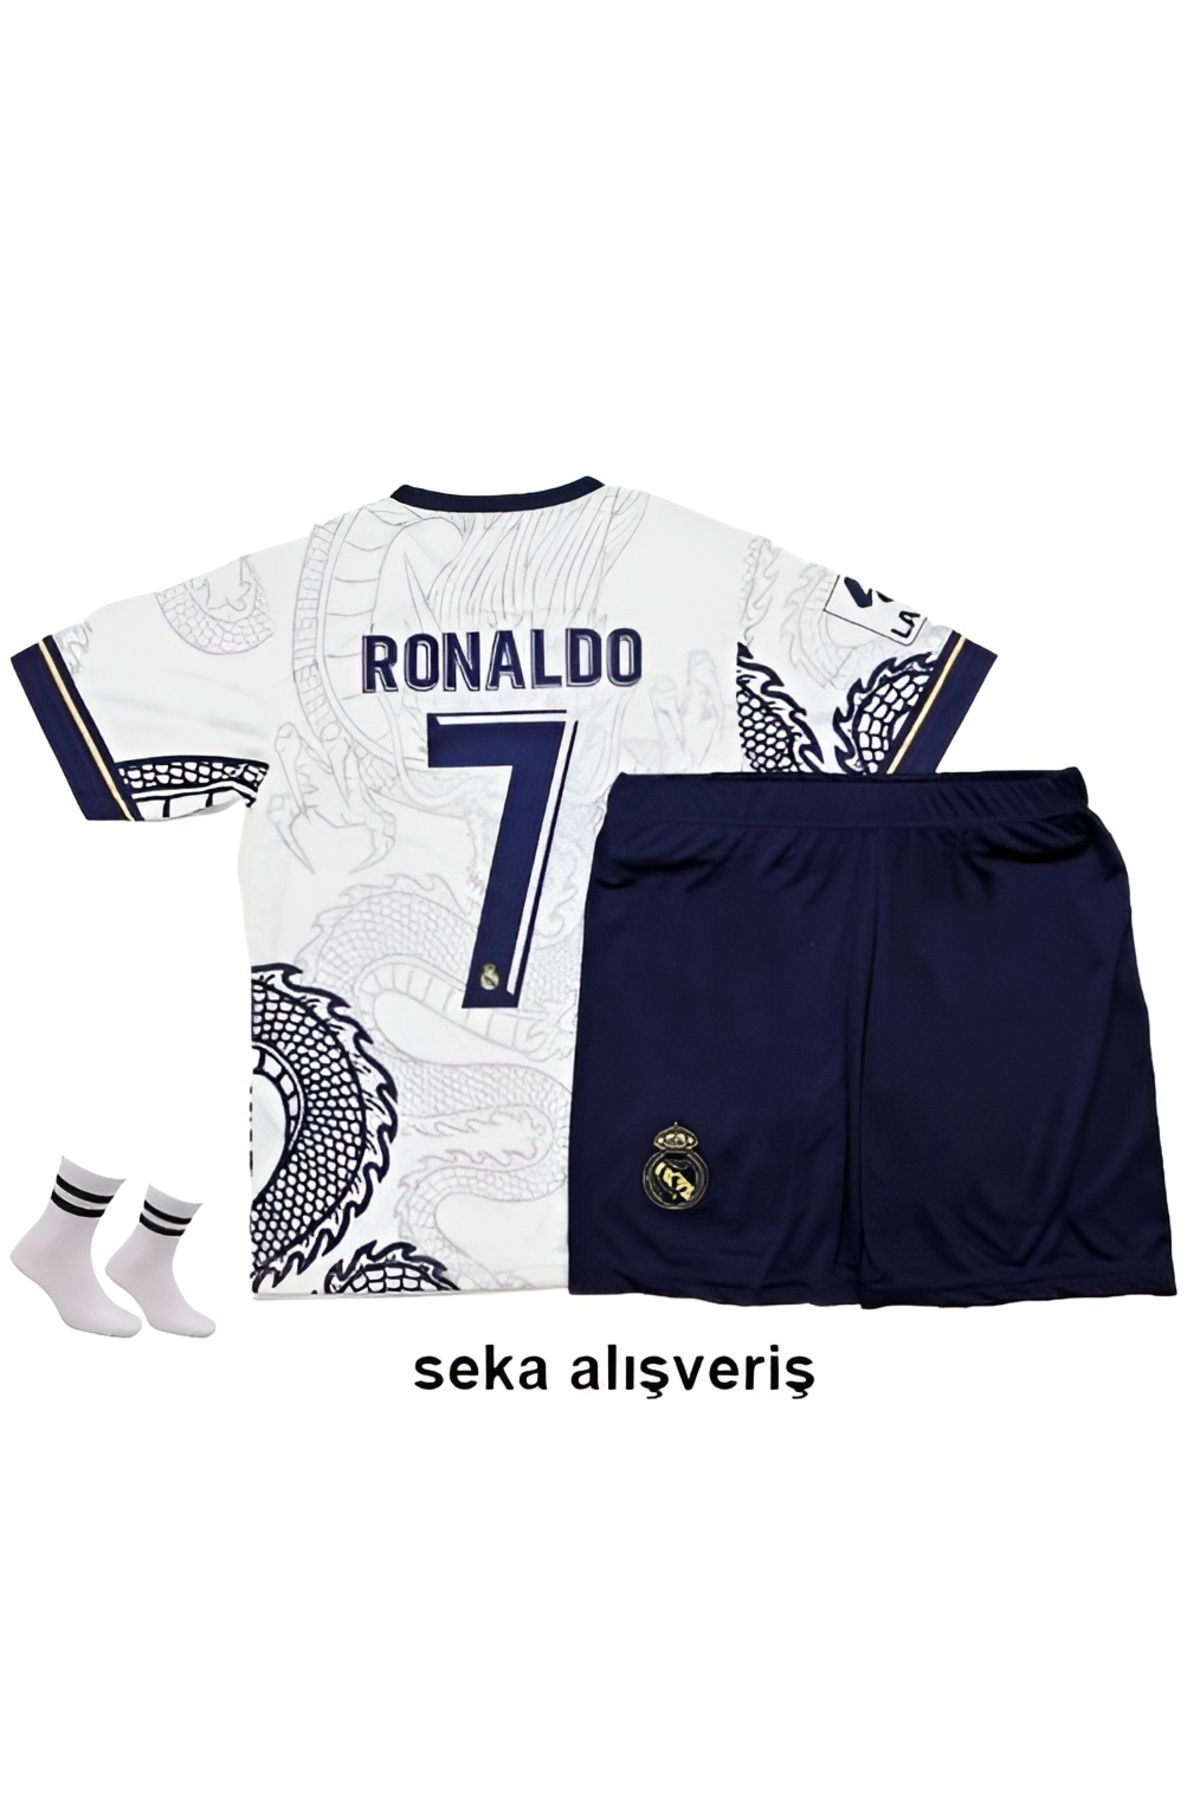 Seka Alışveriş Ronaldo Beyaz Real Madrid Ejderha Motifli Çoçuk Forma Seti ( Forma,şort Ve Çorap )